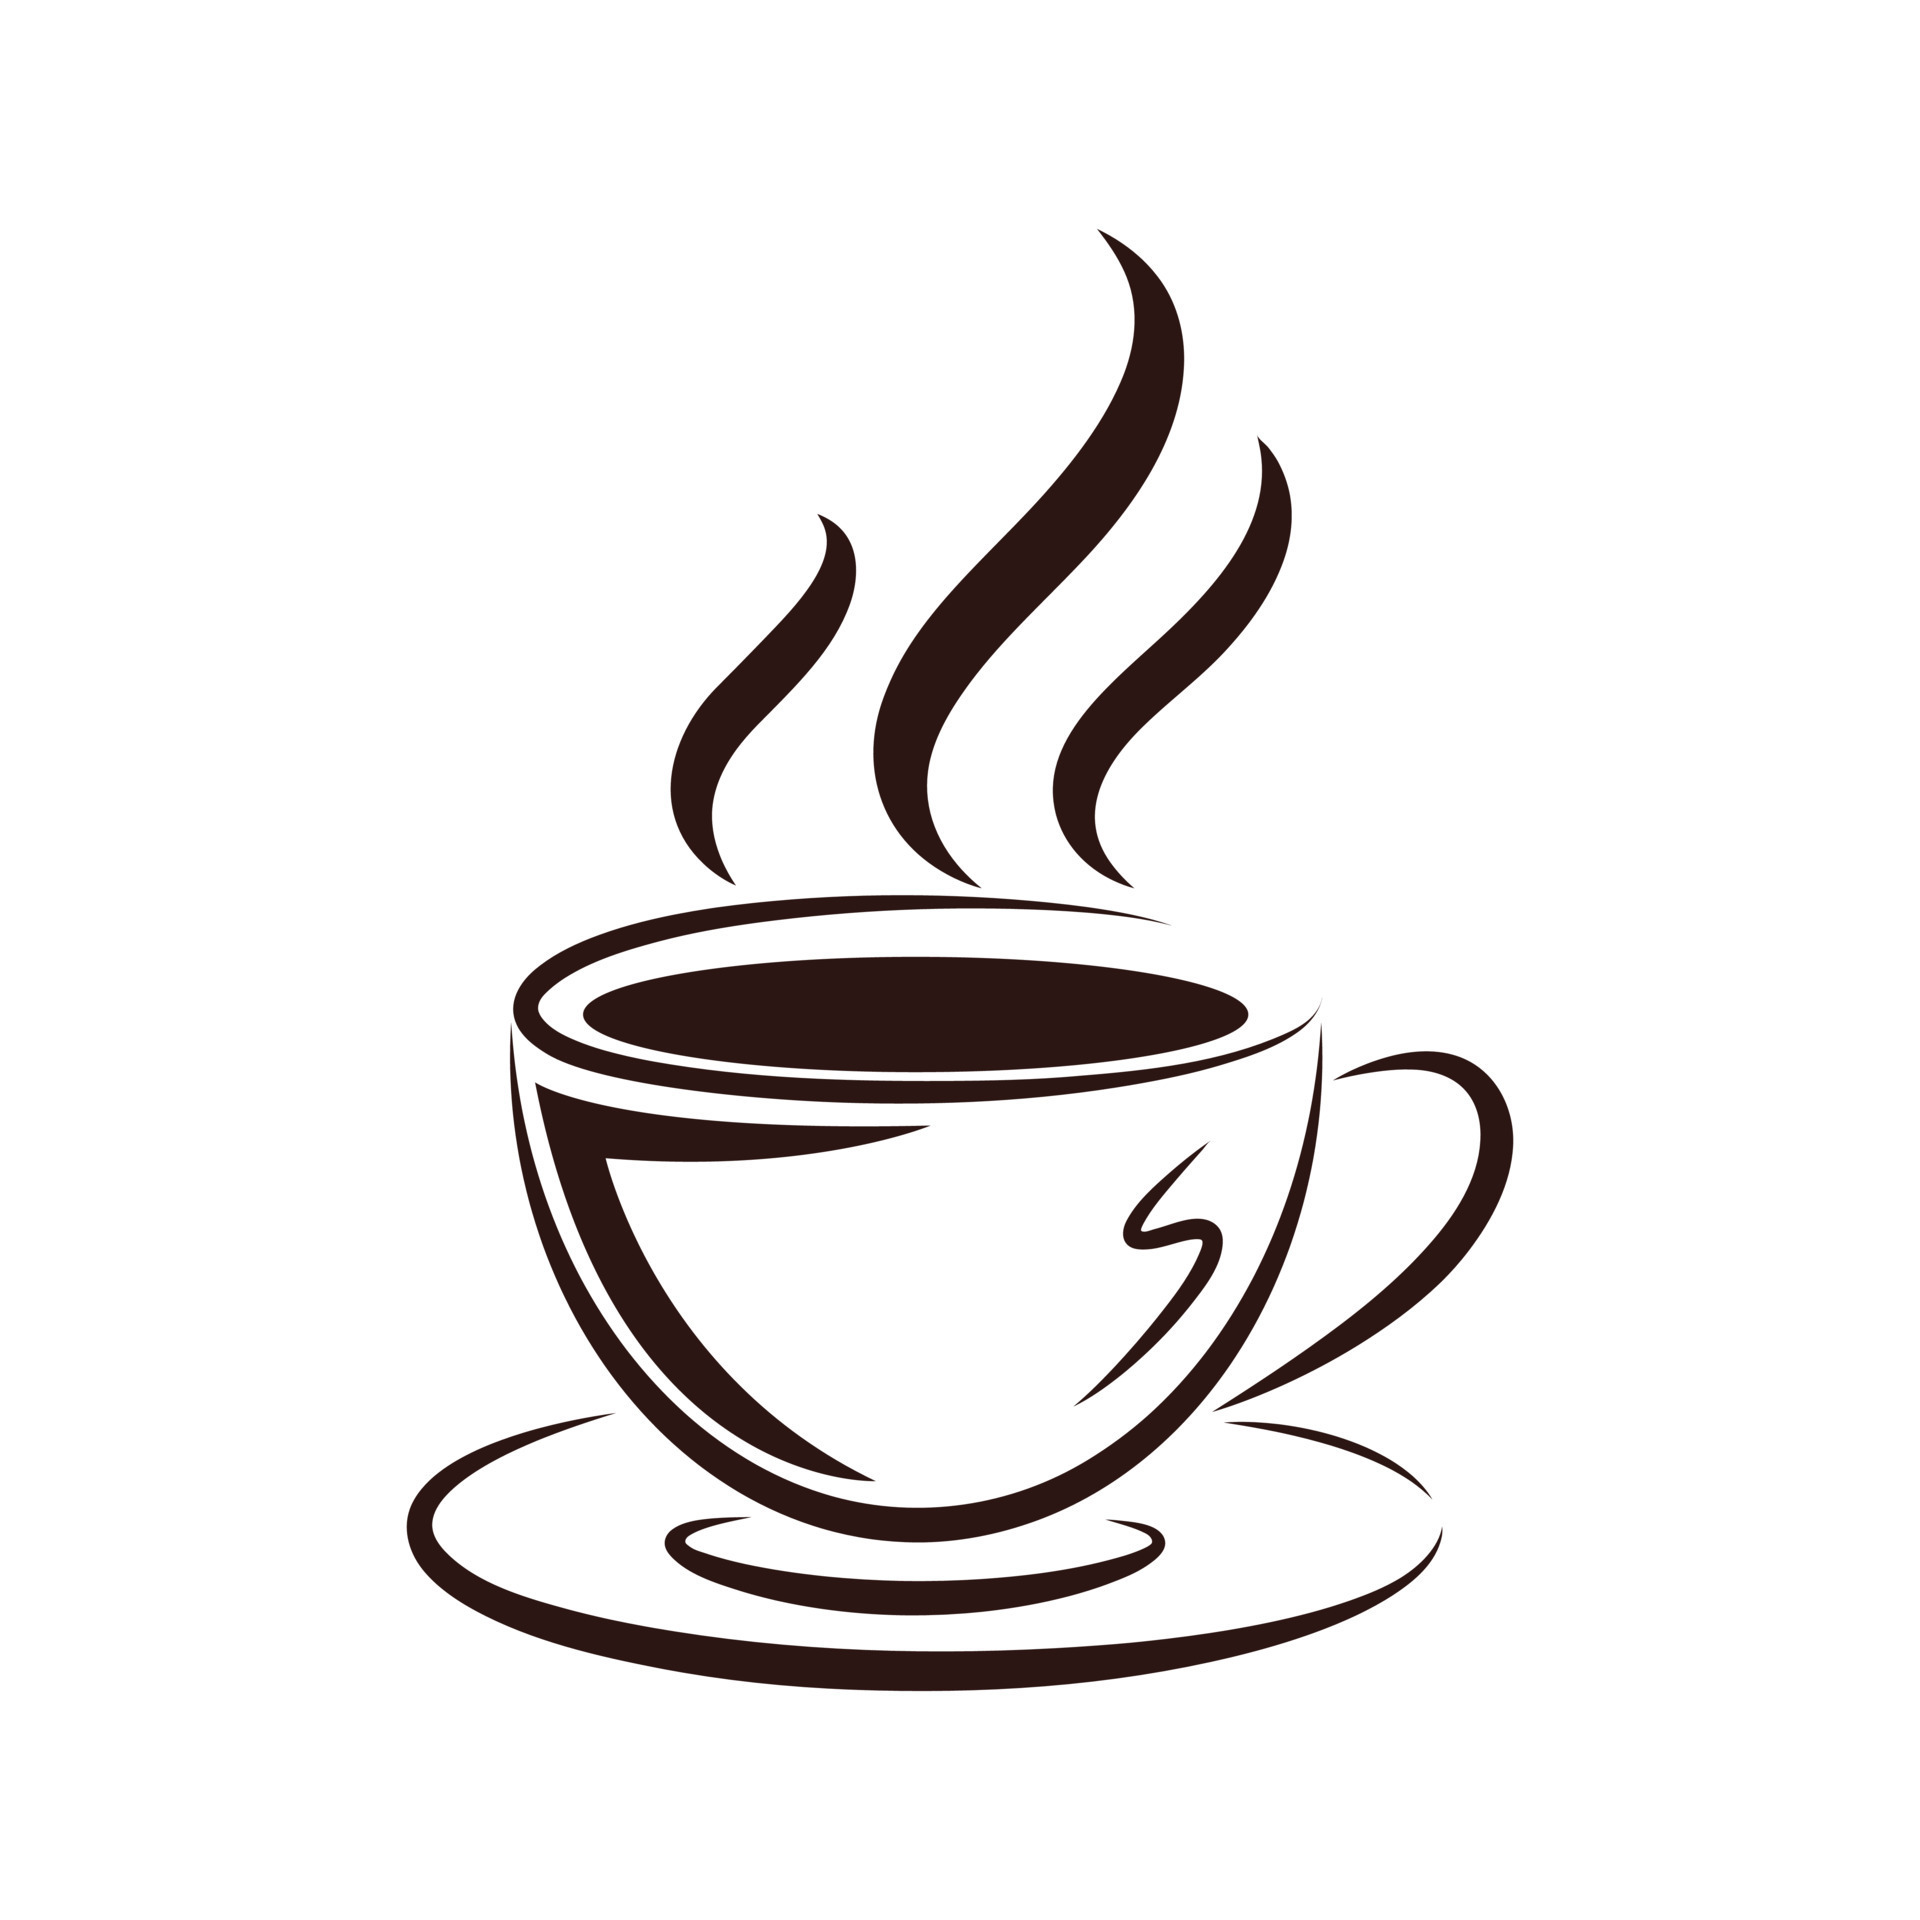 icono de taza de cafe 5871328 Vector en Vecteezy